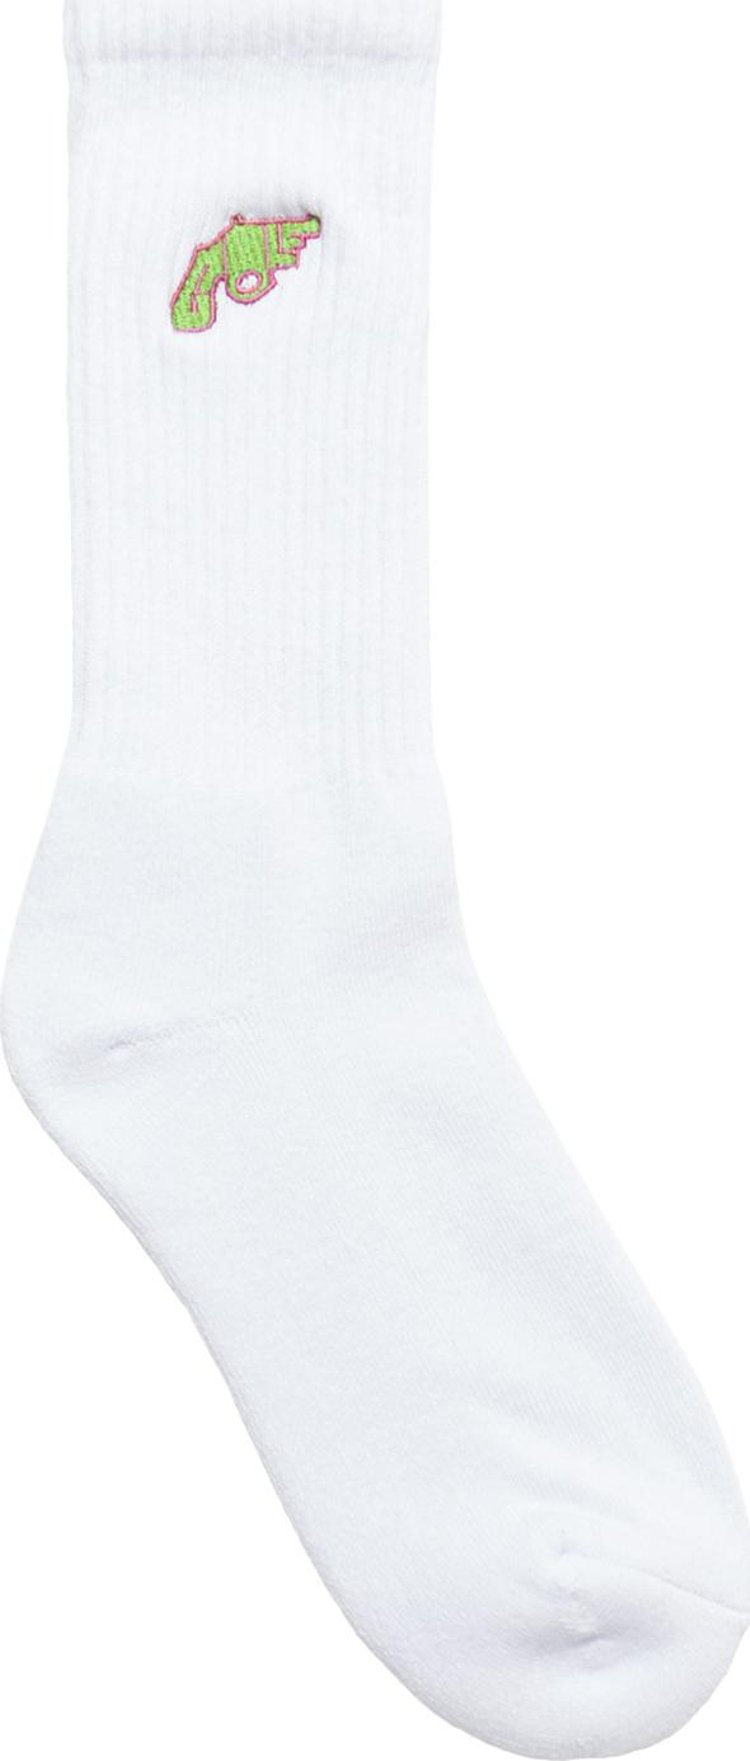 GOLF WANG Snub Nose Socks 'White'